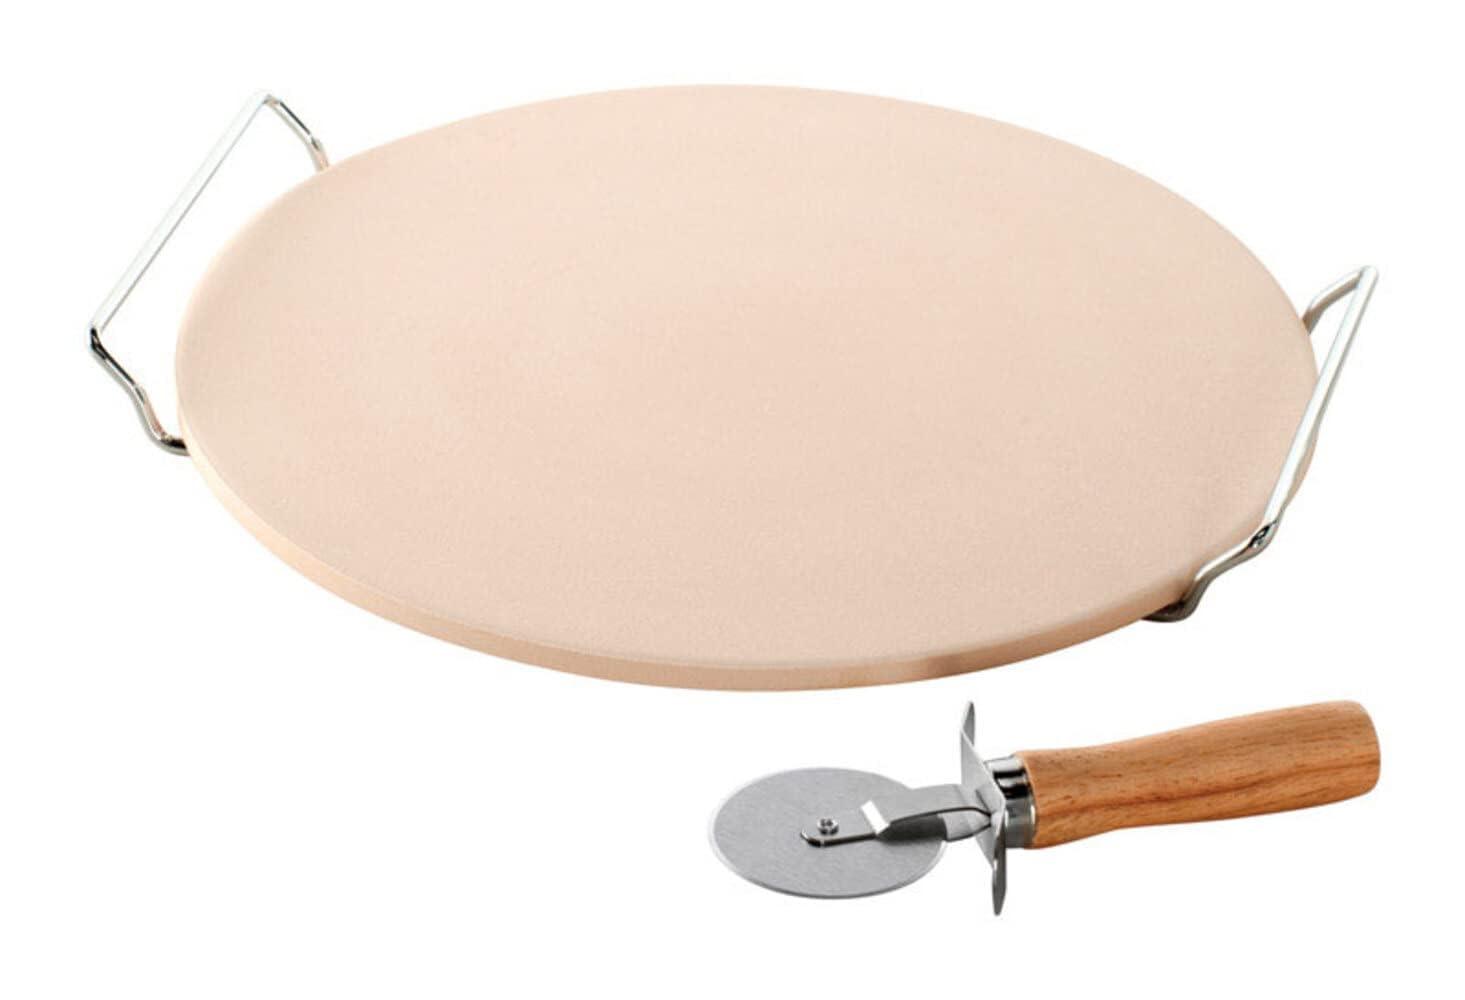 Nordic Ware, Tan Pizza Stone Set, 13 inch diameter - CookCave